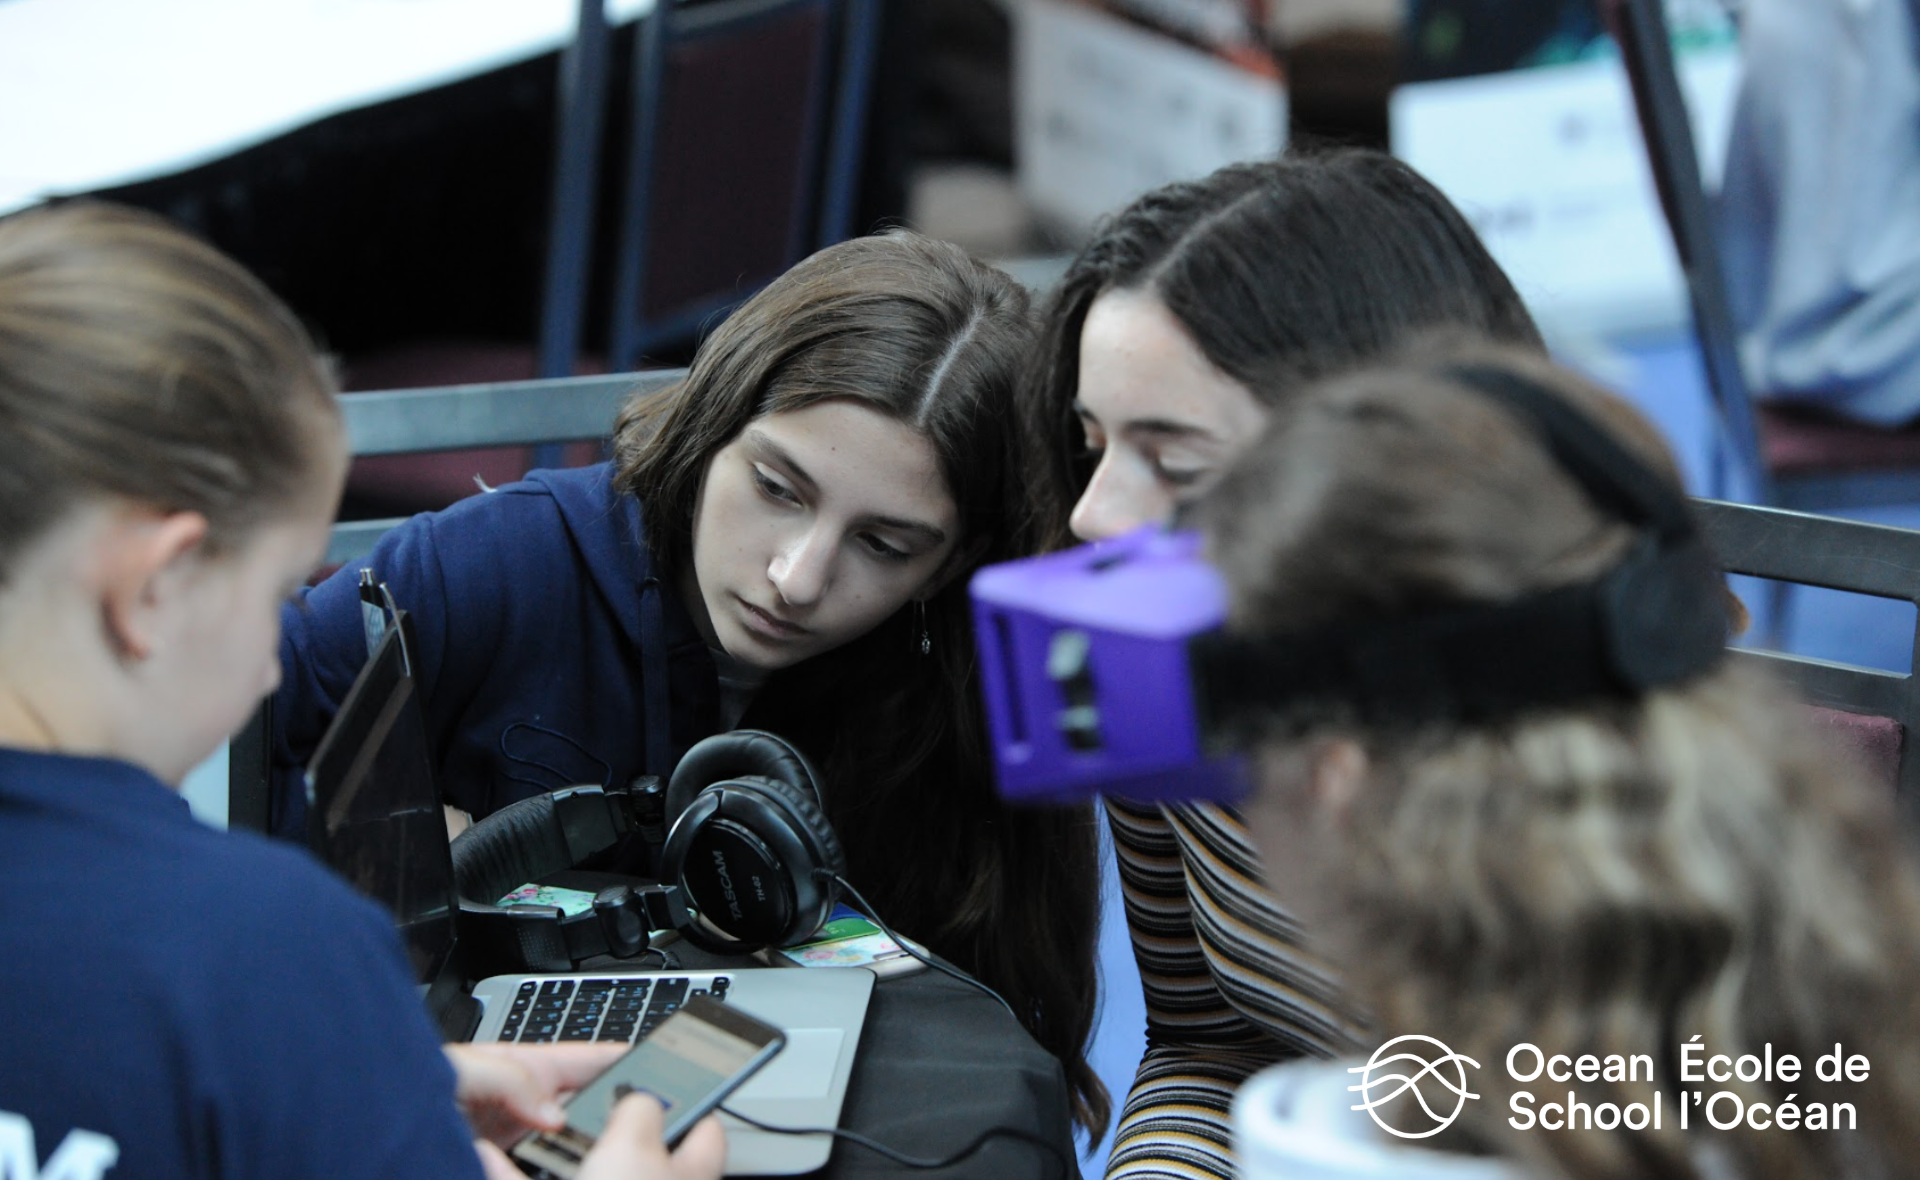 Quatre élèves explorent des activités: deux d’entre eux regardent l’écran d’un ordinateur portable, l’un a un casque de réalité virtuelle et un autre regarde un téléphone intelligent.